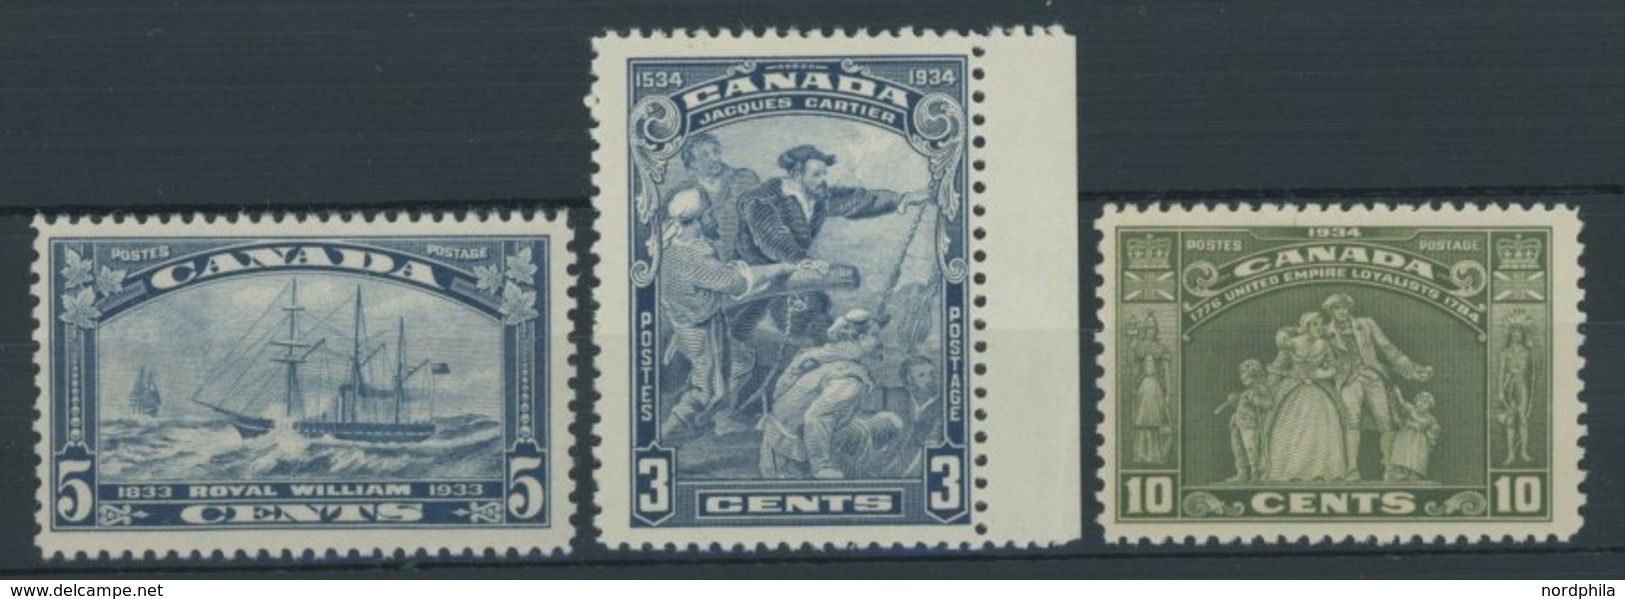 KANADA 174-76 **, 1933/4, 3 Postfrische Werte, Pracht - Nuevos